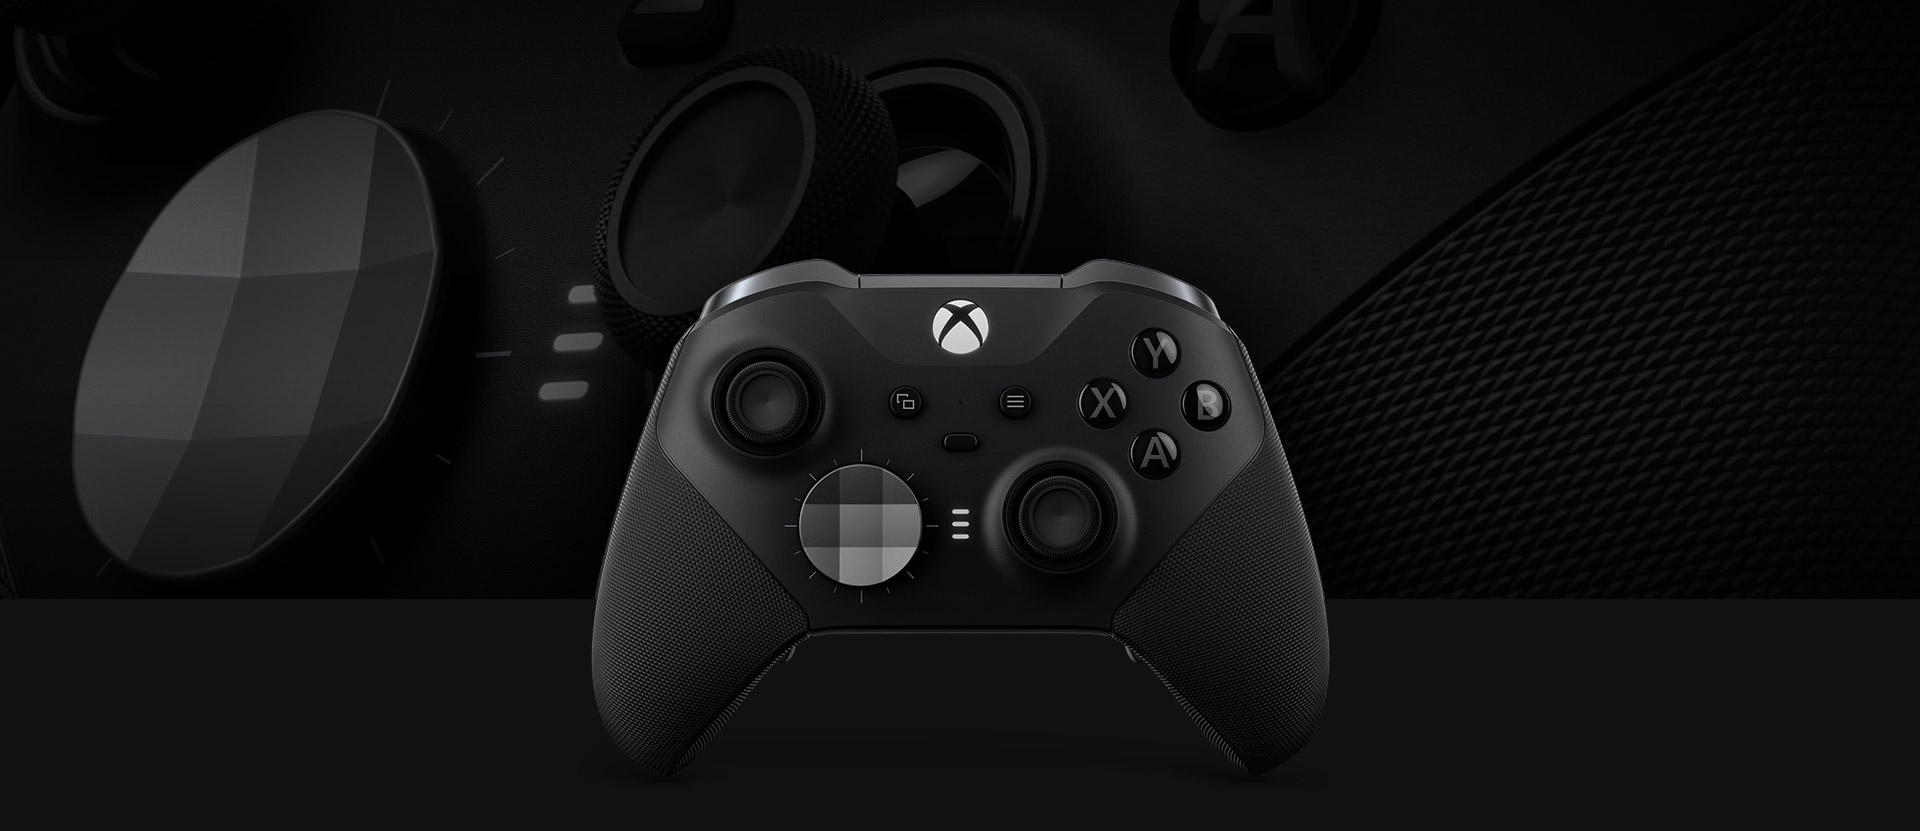 Bezprzewodowy kontroler Xbox Elite Series 2 widziany z przodu, ze zbliżonym obrazem kontrolera w tle